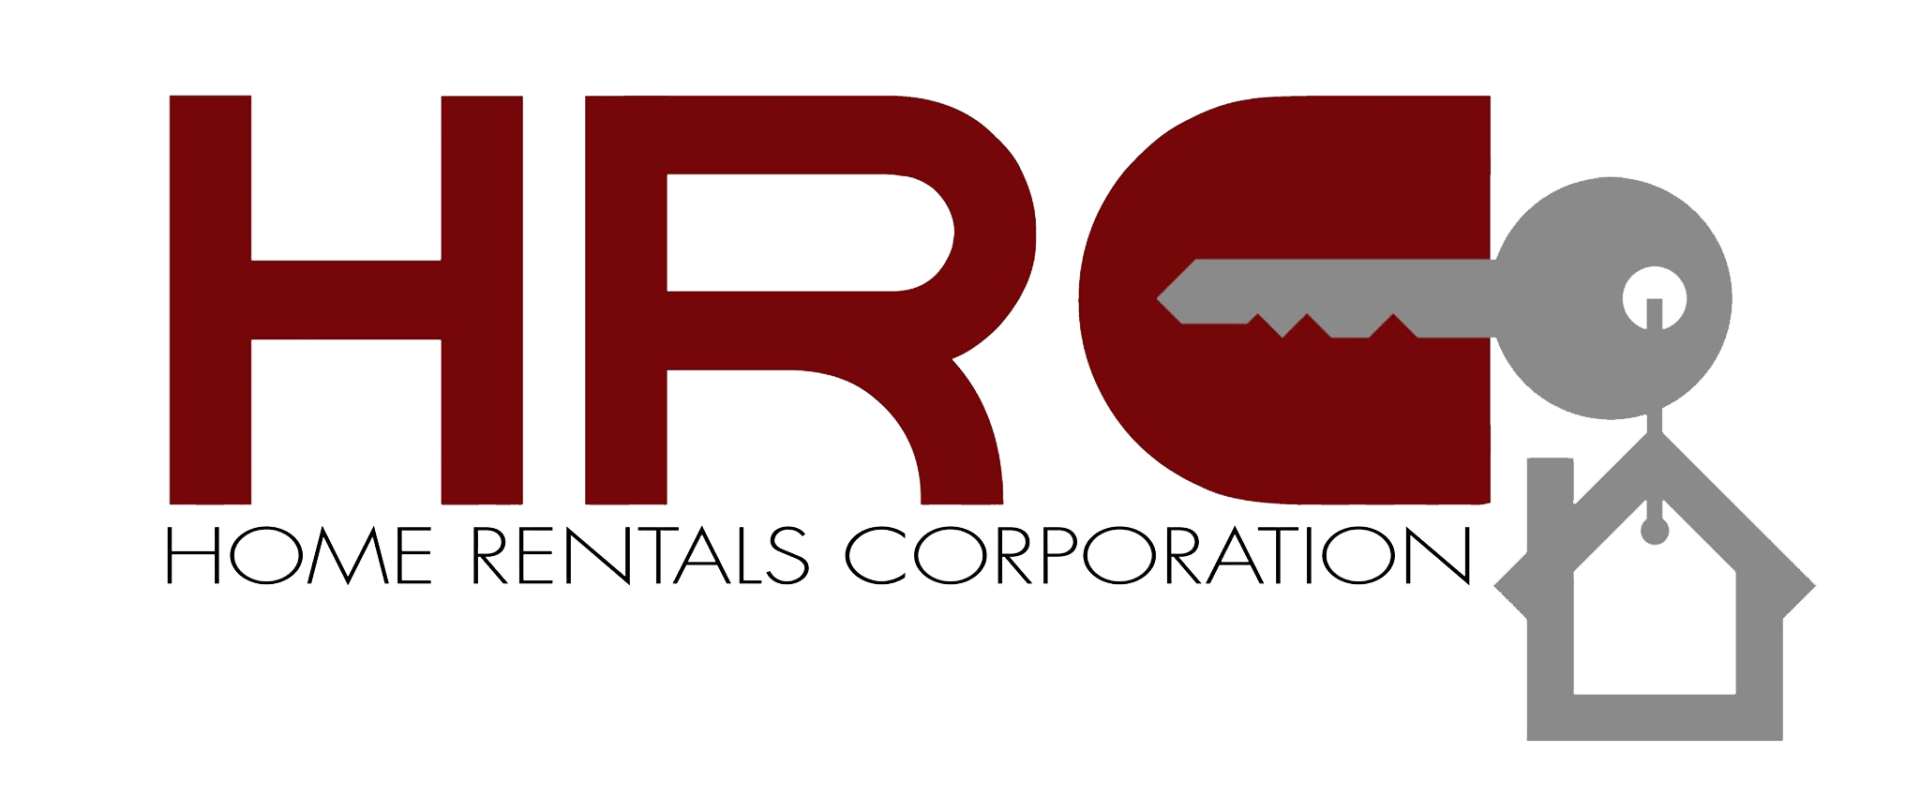 Home Rentals Corporation Logo